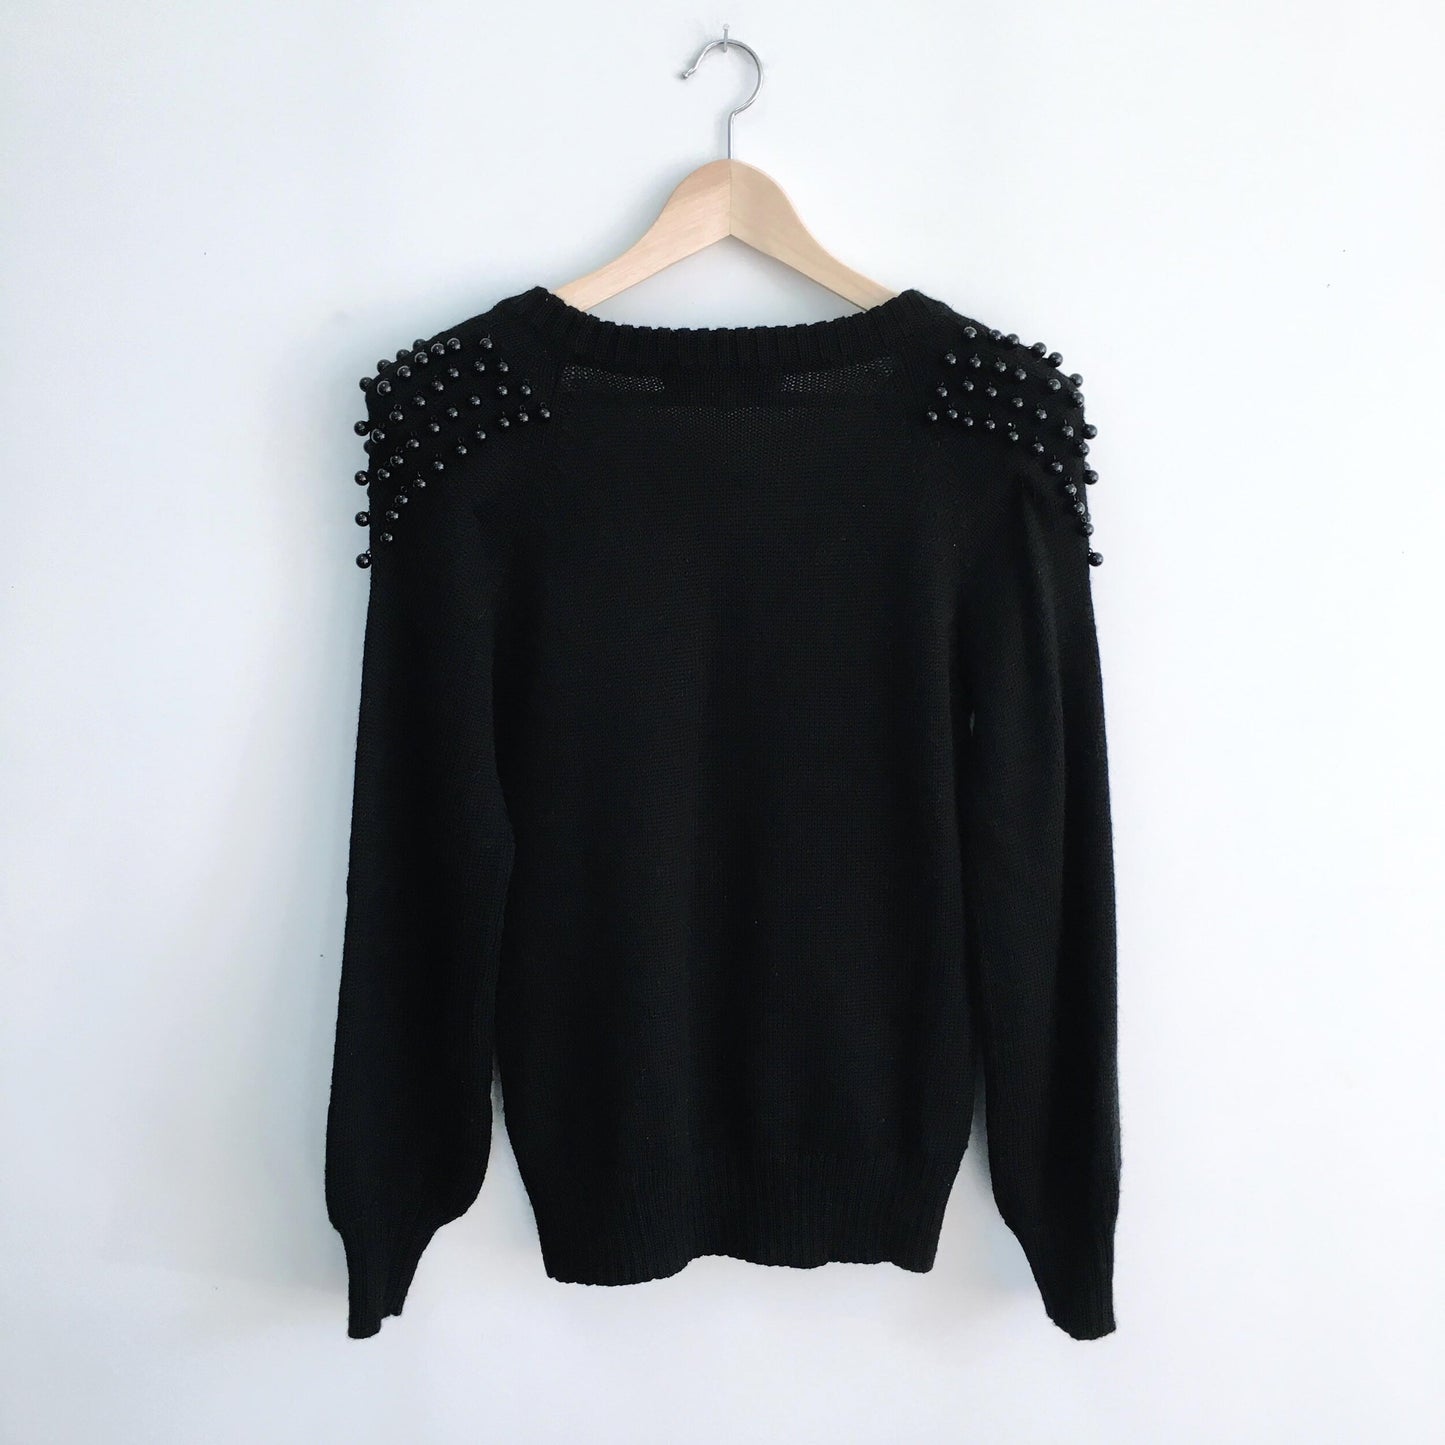 Designers Remix Laperla Sweater - size Medium